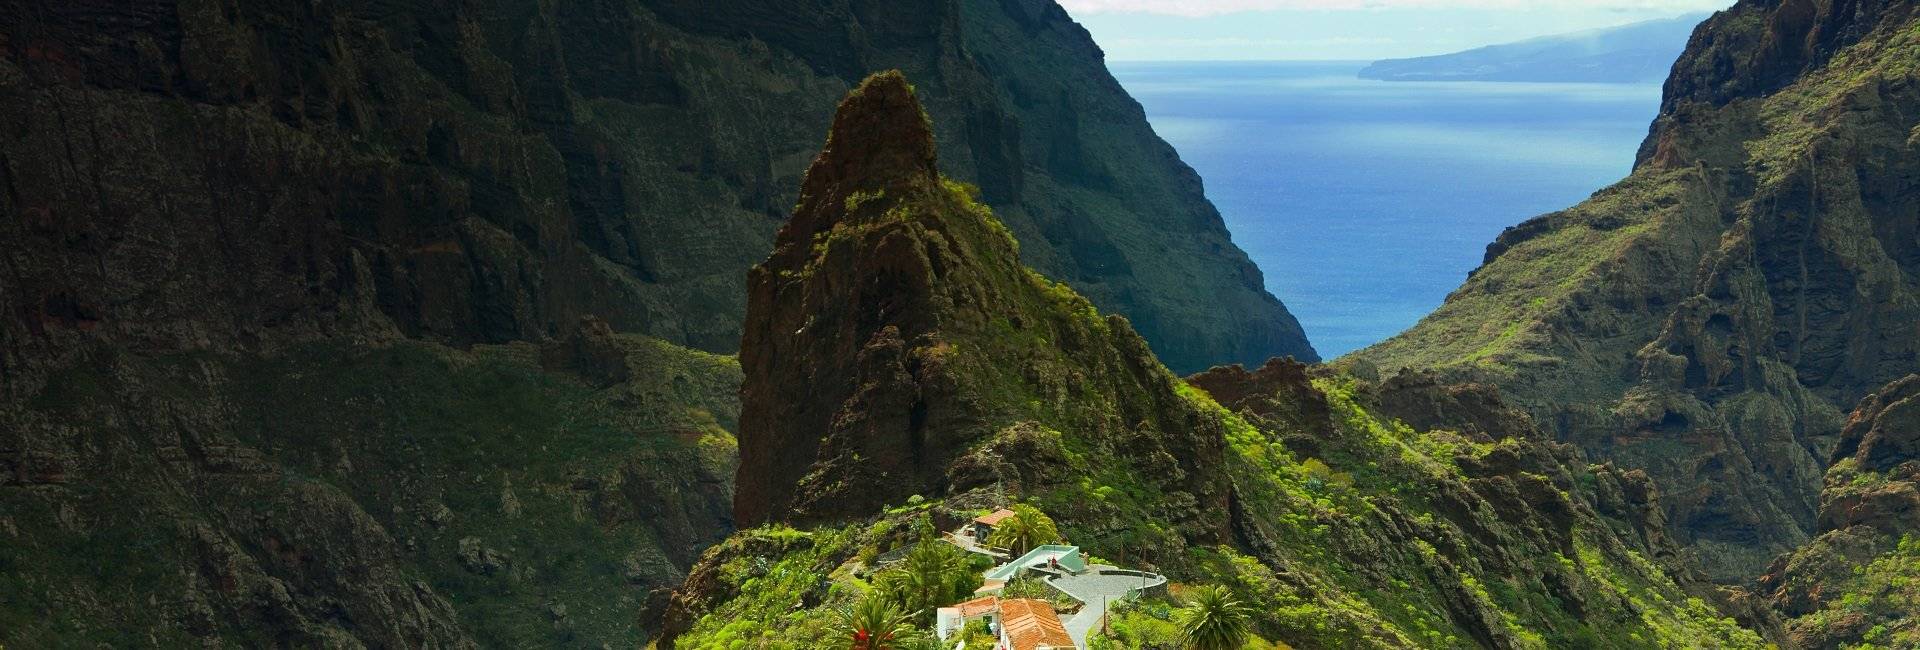 Tenerife, Spania